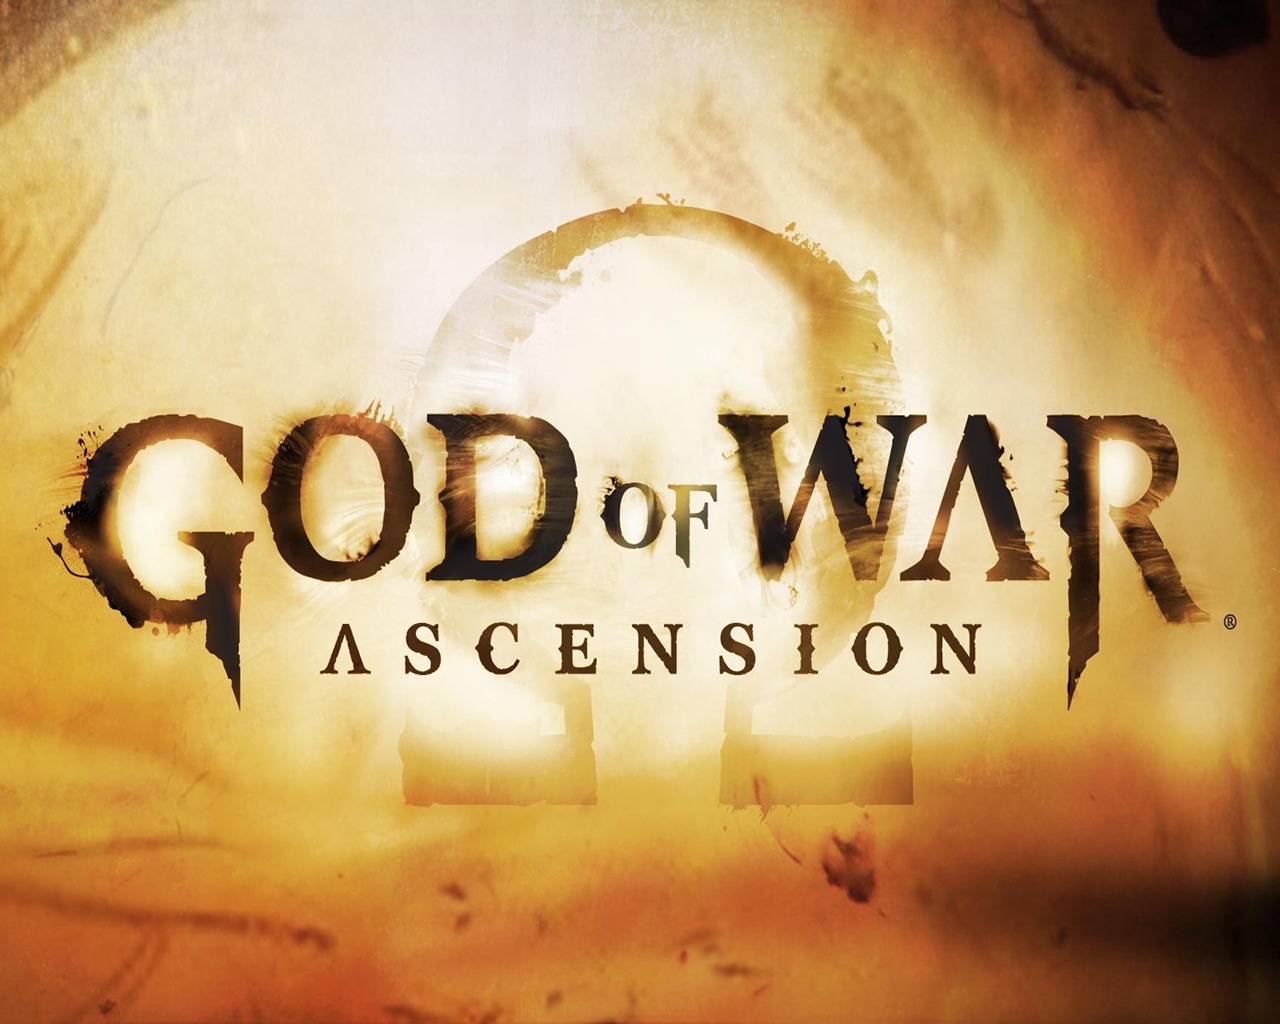 God of War Ascension for 1280 x 1024 resolution